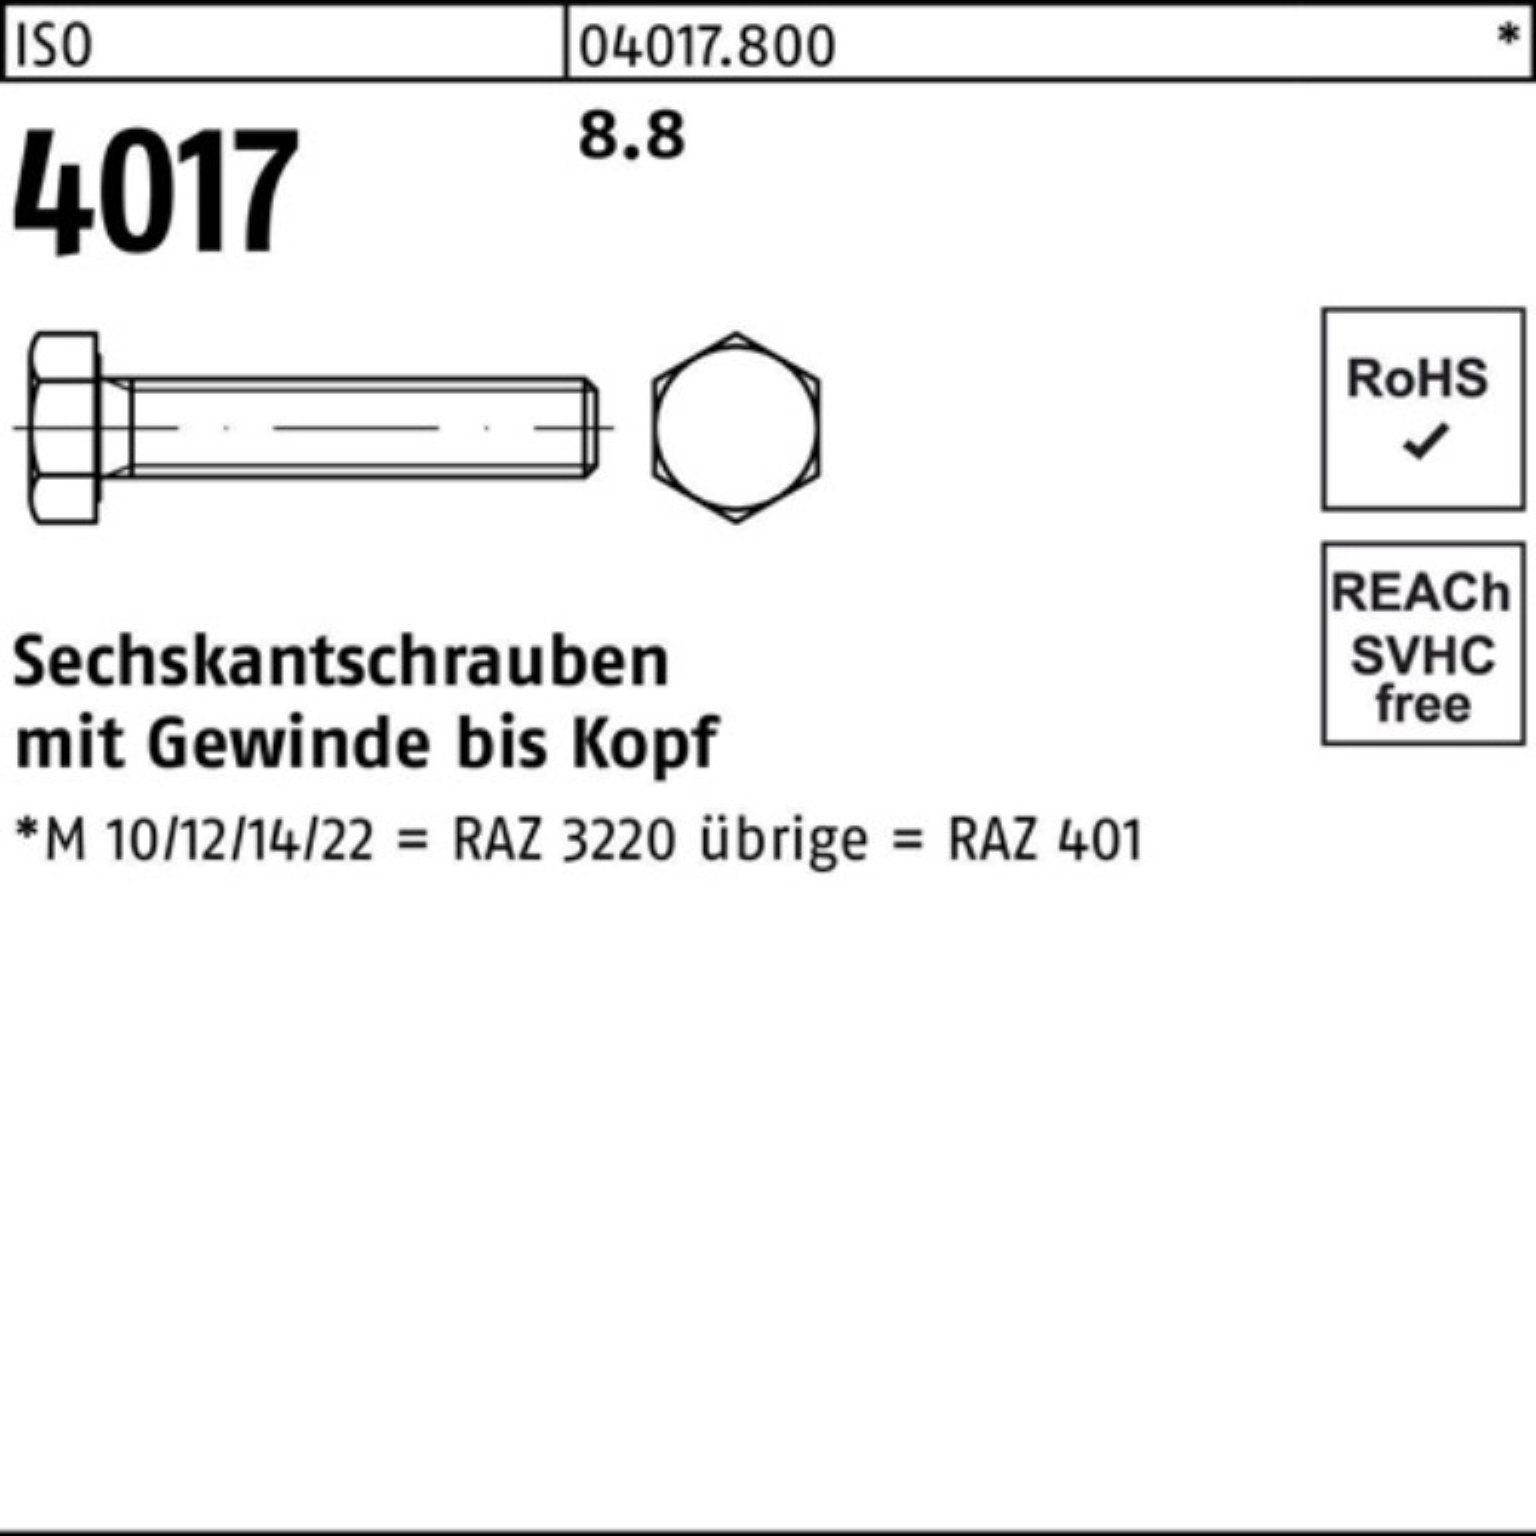 VG M6x 200 Sechskantschraube 8.8 Sechskantschraube Stück 200er Bufab 4017 ISO Pack ISO 80 401